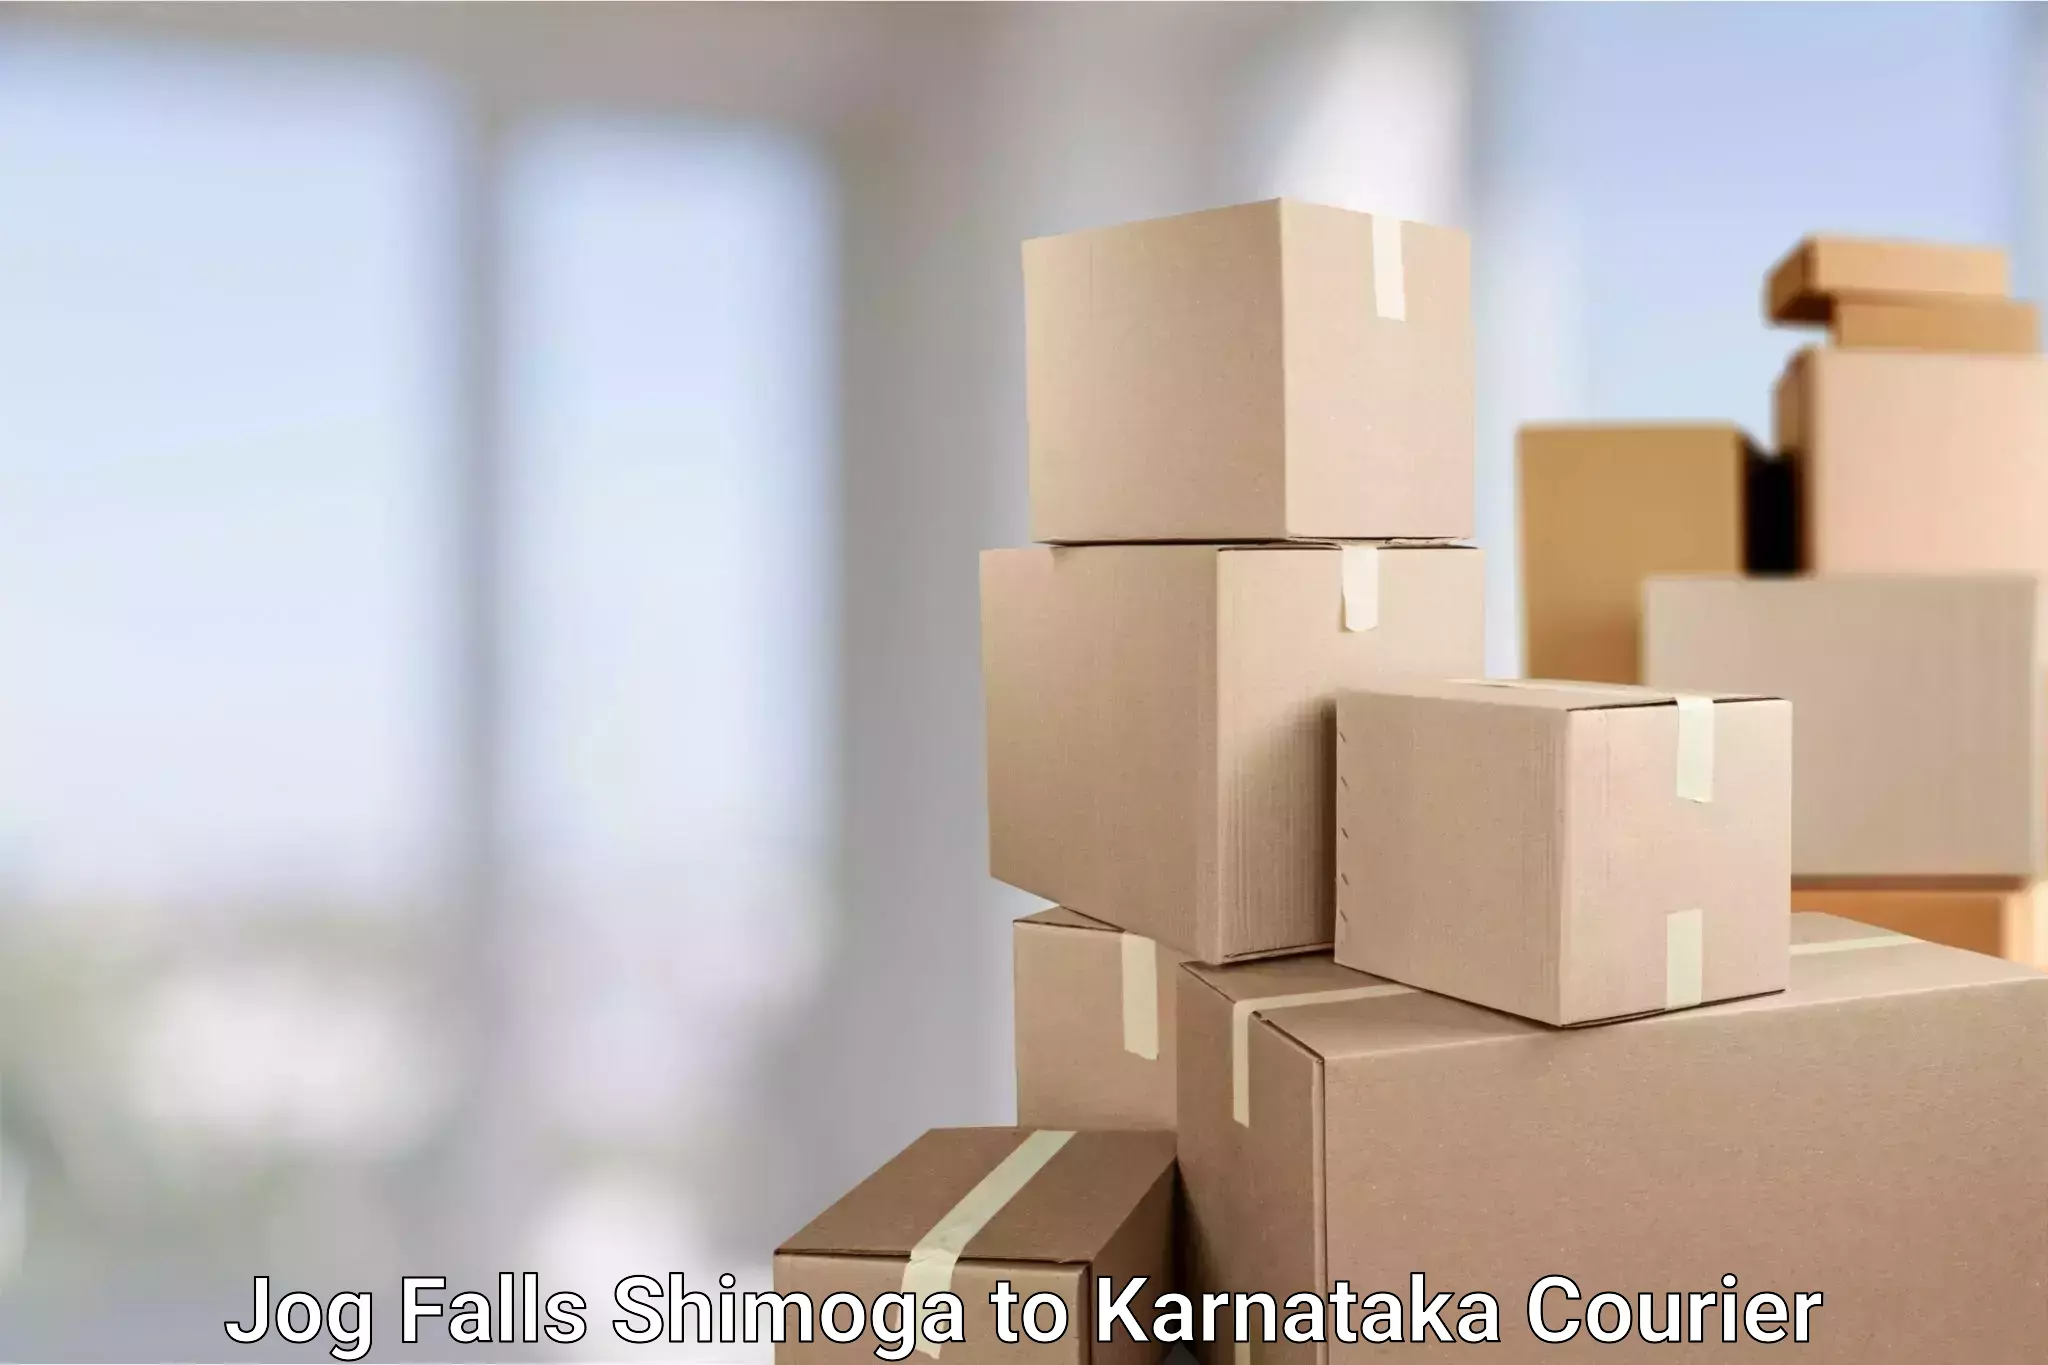 Online courier booking Jog Falls Shimoga to Karnataka